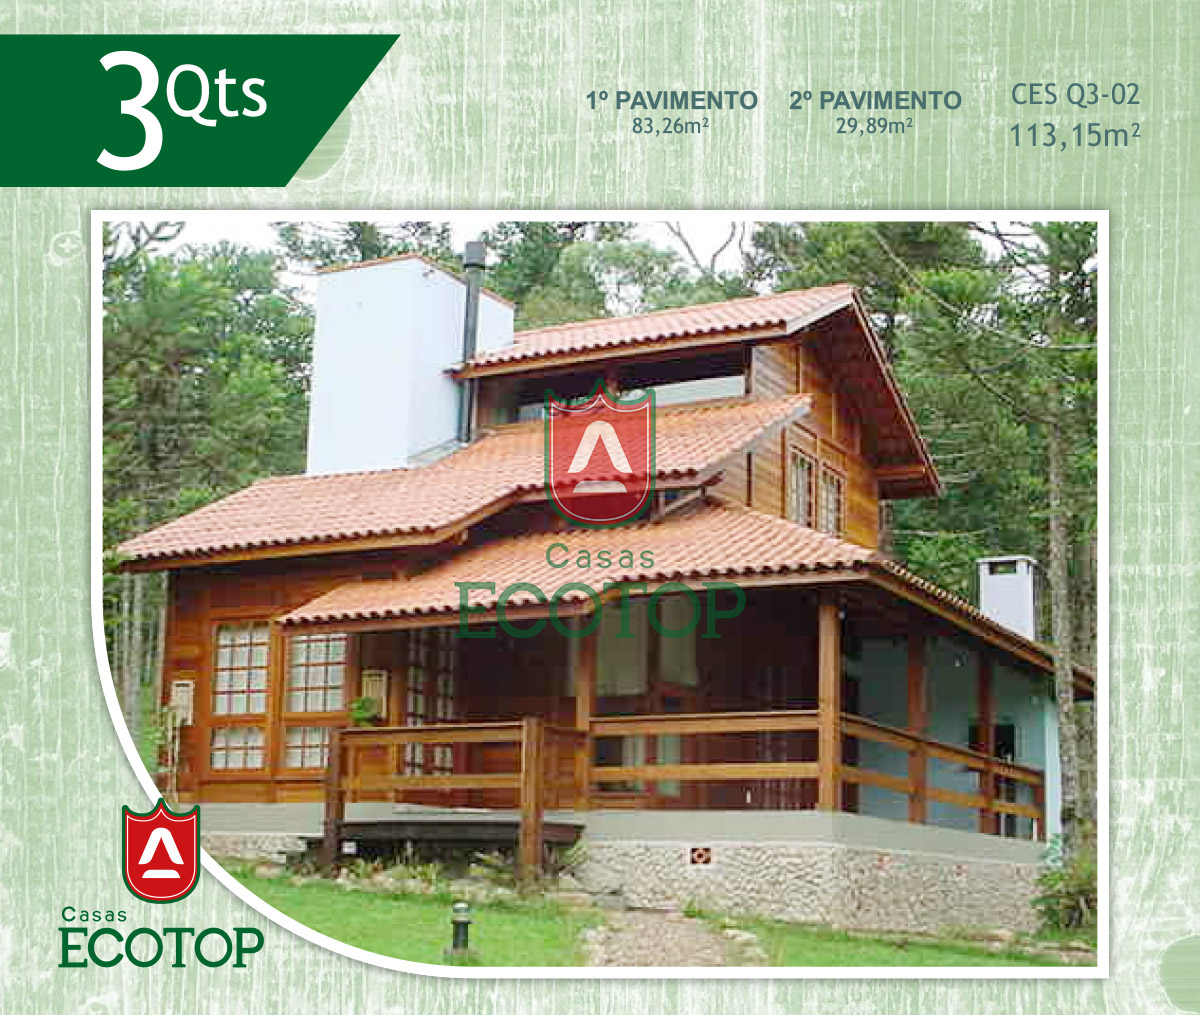 ces-02-fachada-casas-de-madeira-ecotop.cdr